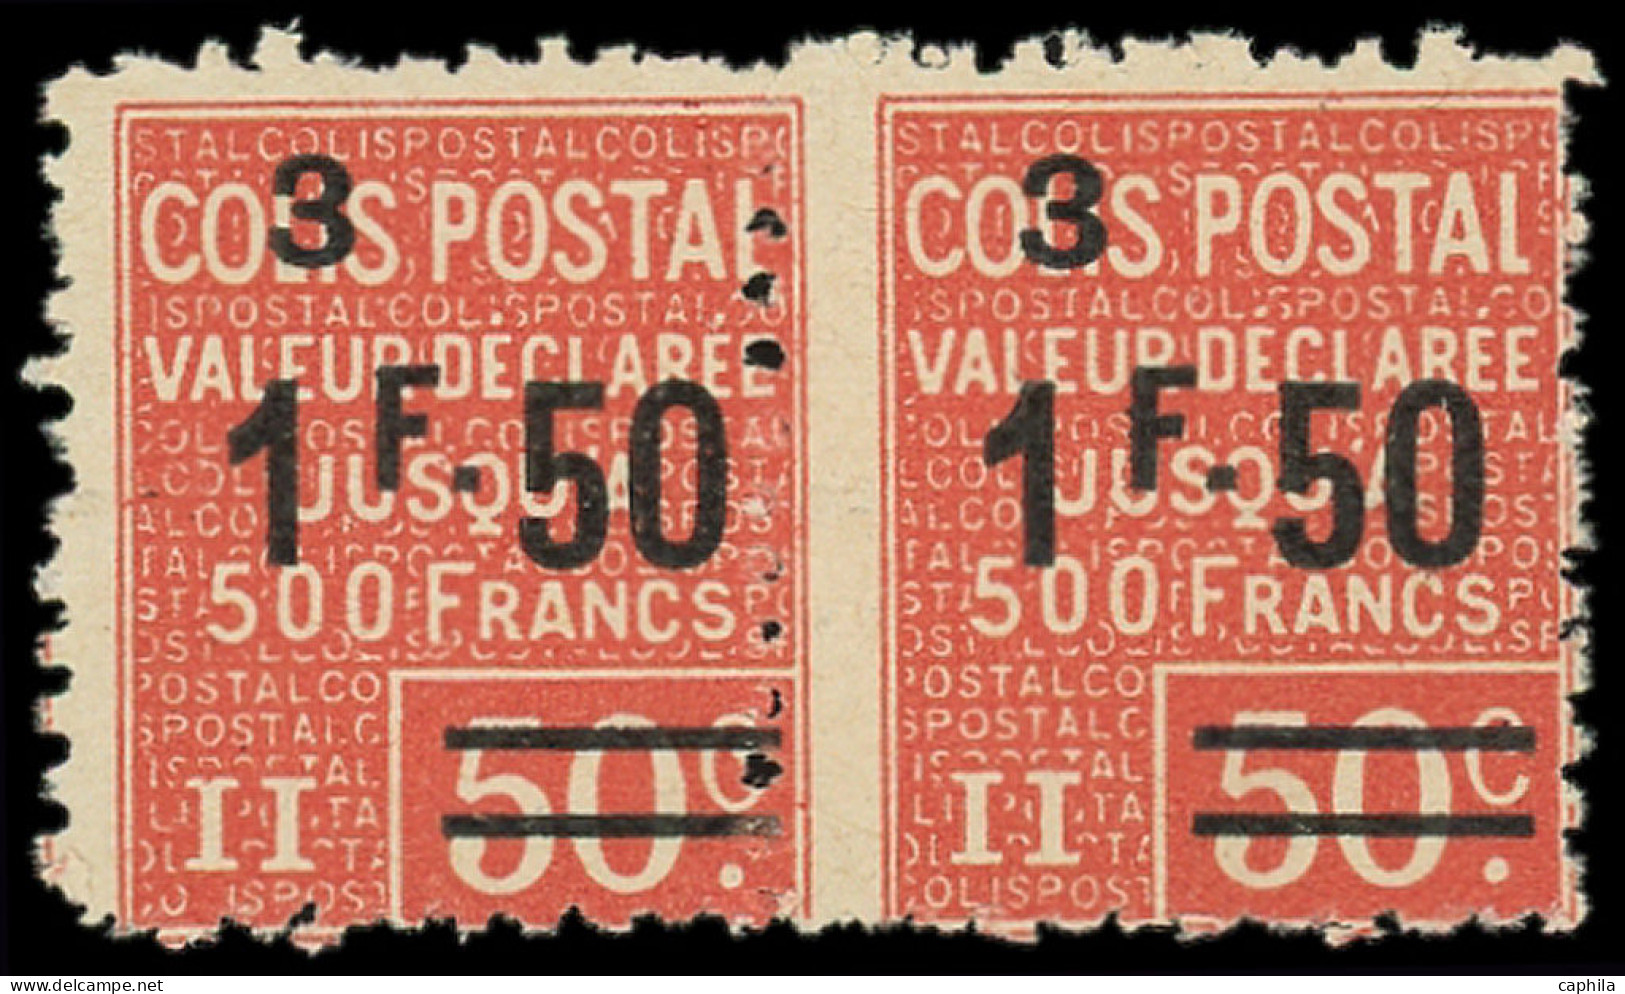 ** FRANCE - Colis Postaux - 62, Paire Horizontale, Piquage à Cheval: 1.50f. Sur 50c. Rouge - Mint/Hinged